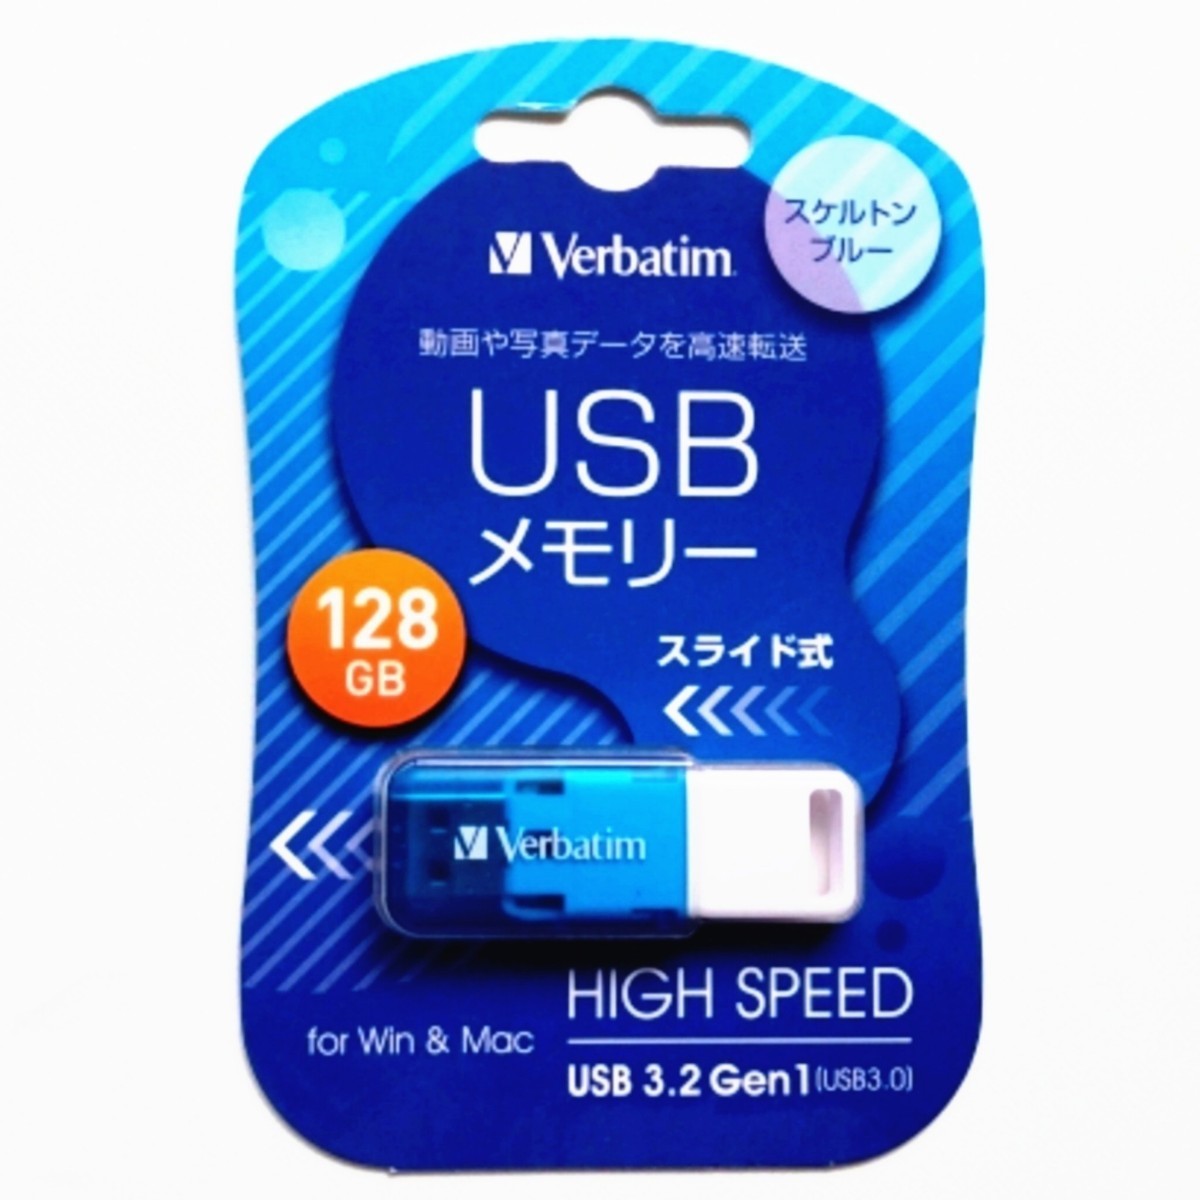 スライド式USBメモリ 128GB USB3.1(Gen1) USBSSG128GBV1【1円スタート出品・新品・送料無料】_画像1